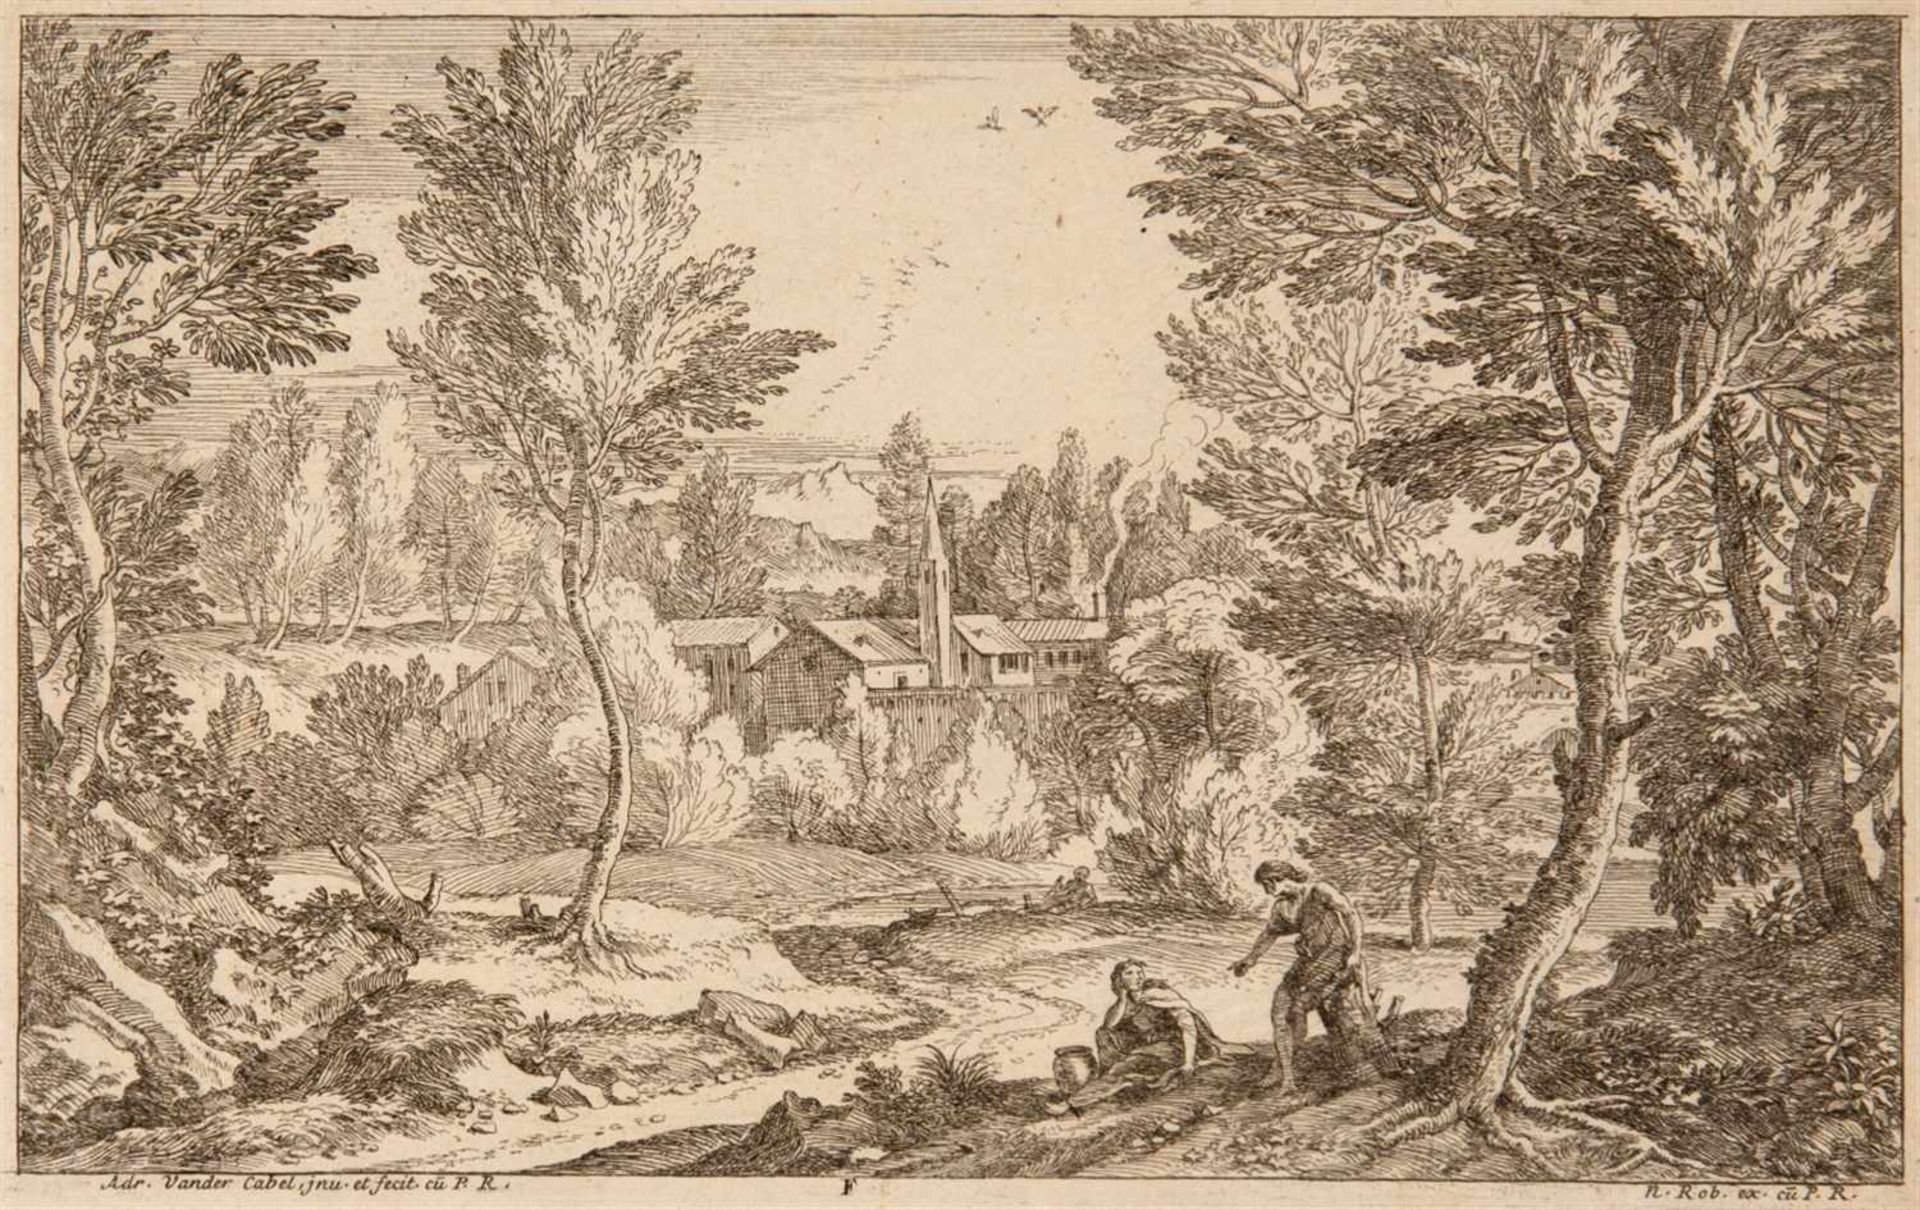 ADRIAN VAN DER CABELRyswyk 1631 - 1705 Lyon Segonds Livre de Paisages du Sr. Vendrecable. Folge - Image 6 of 6